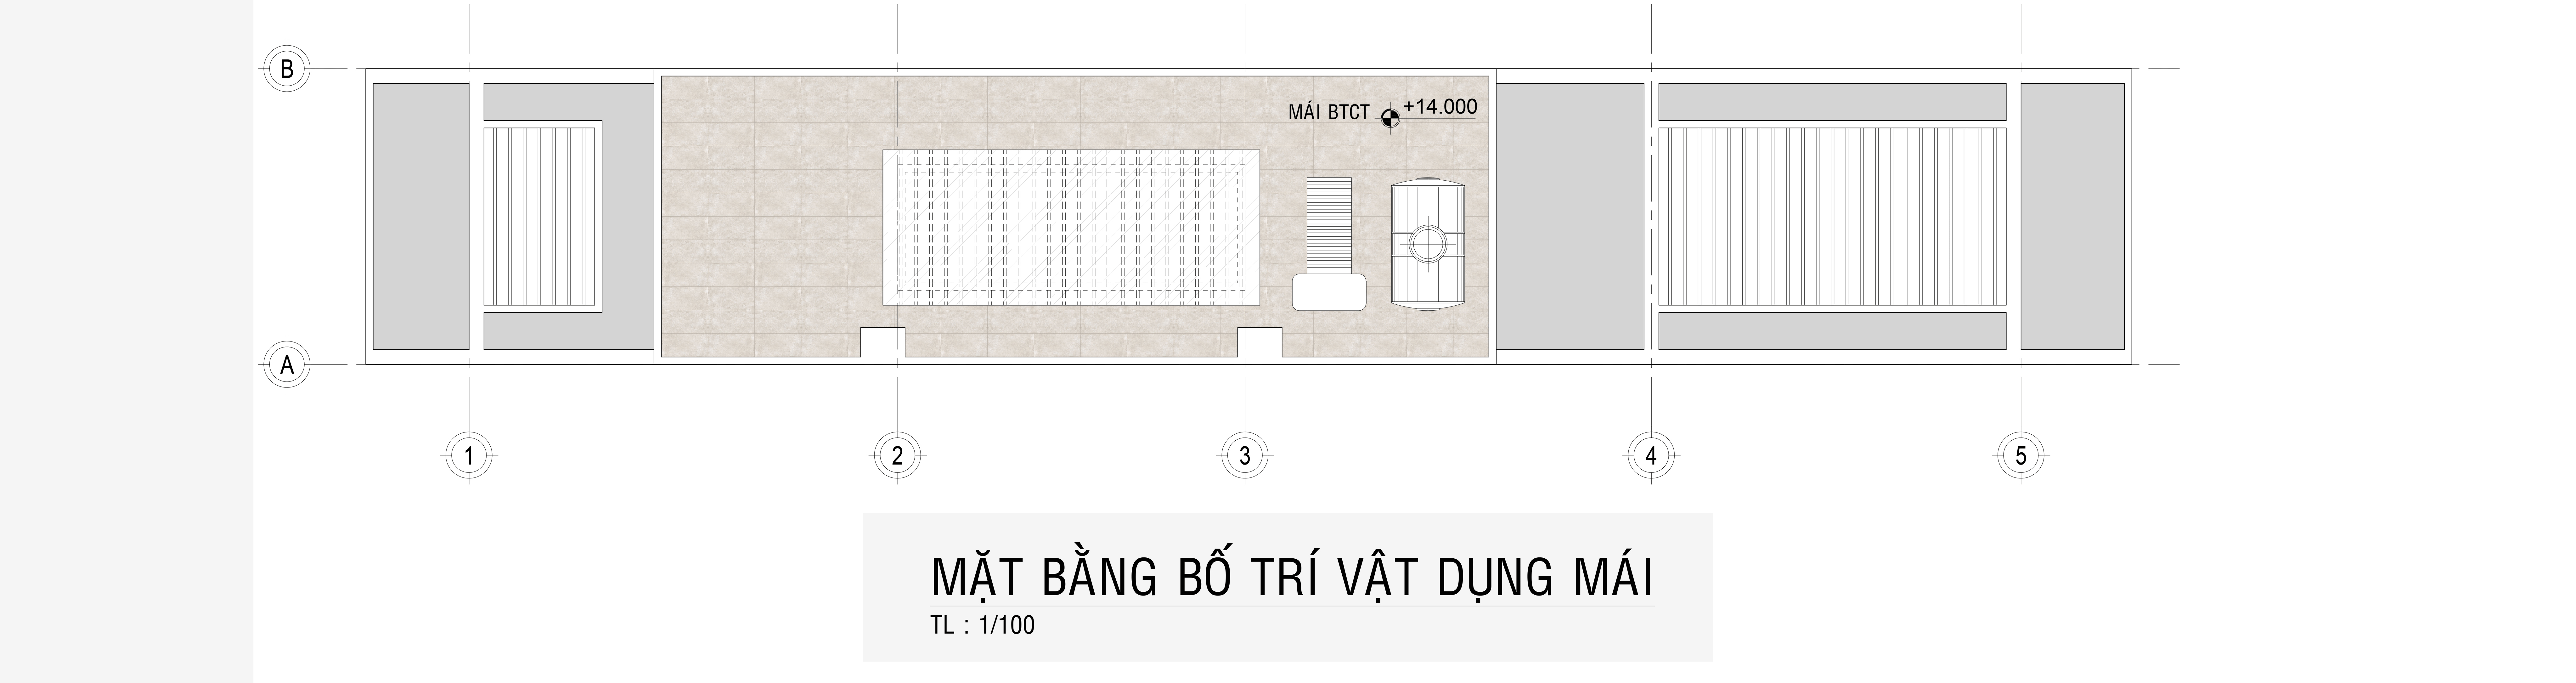 Mat Bang Mau Nha Ong 4 Tang Hien Dai 1 Tret 3 Lau 4